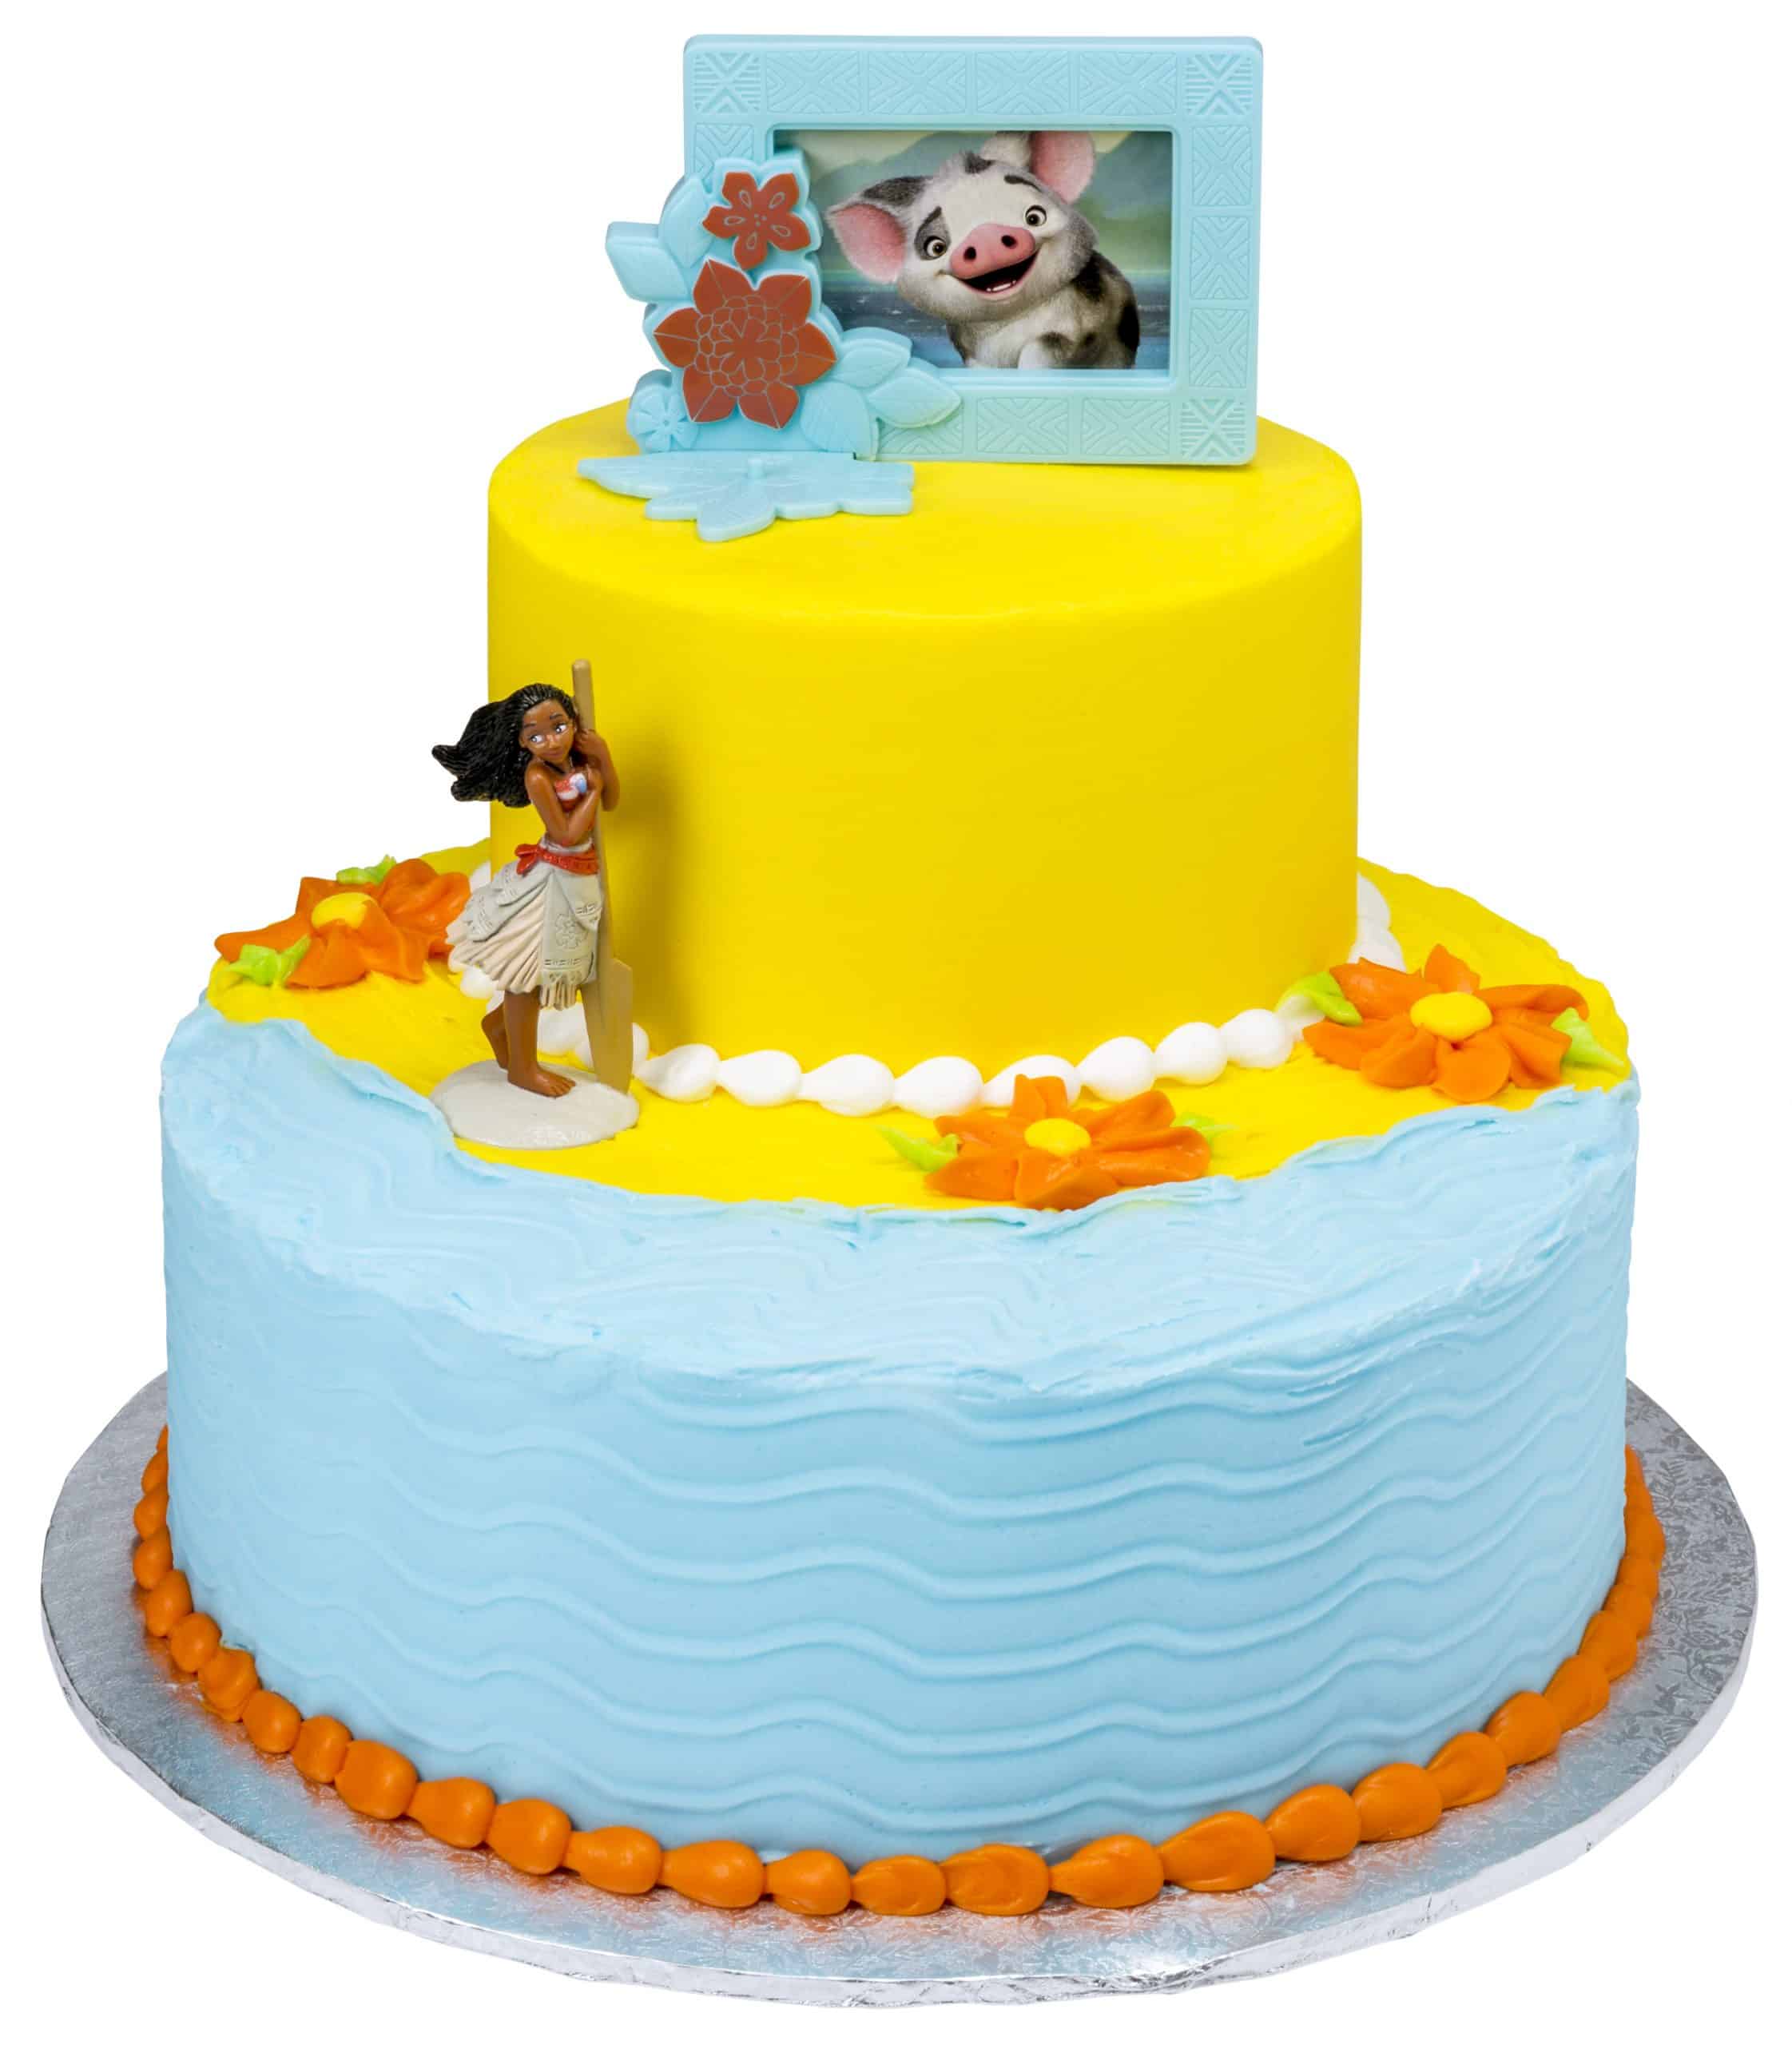 Anniversary Cake At Walmart / Walmart Cake Prices Birthday Wedding Baby ...